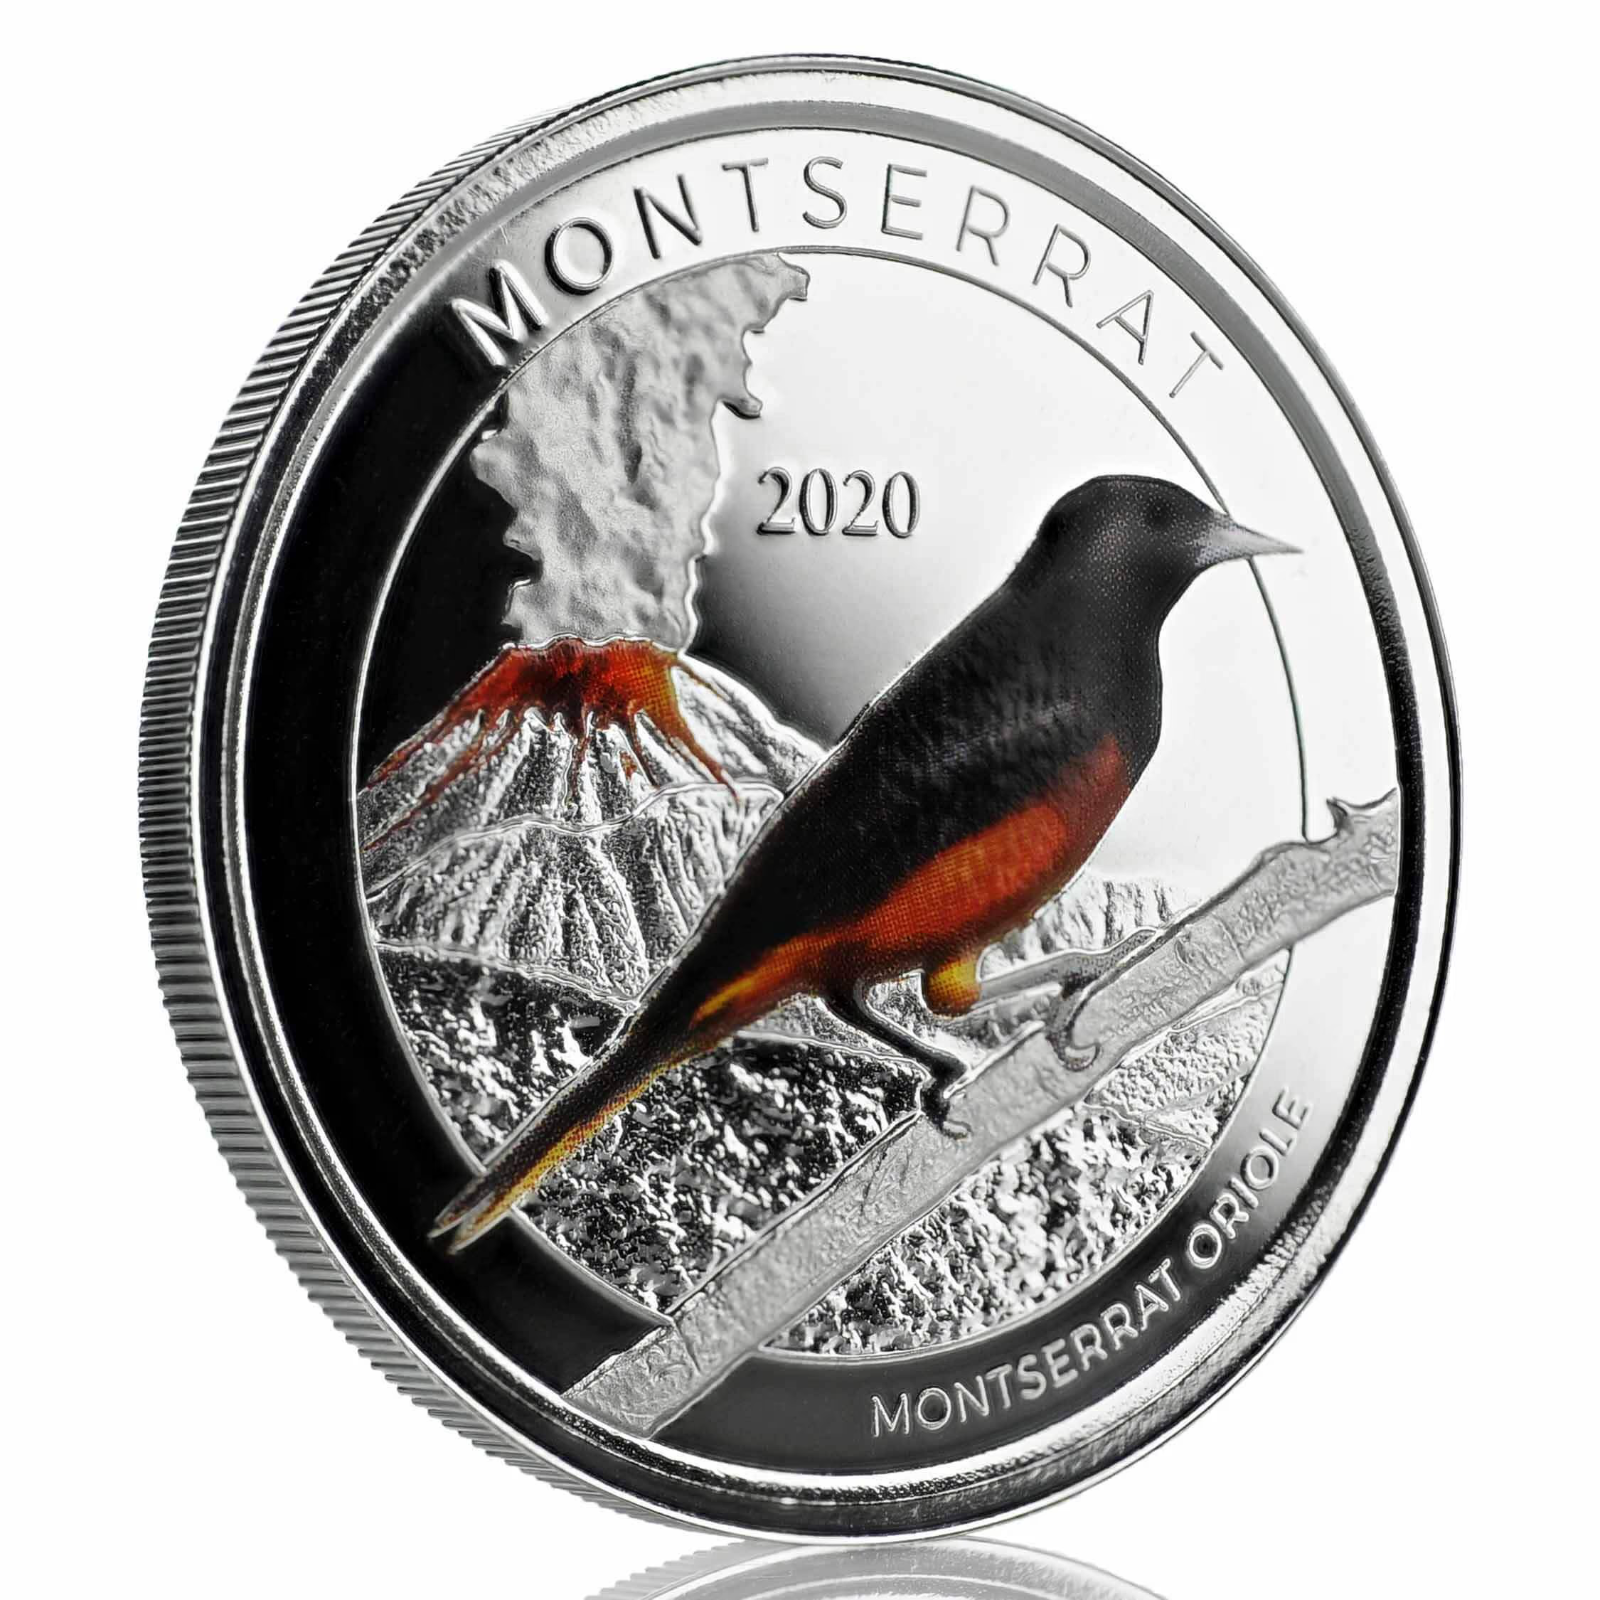 1 Oz Silver Coin 2020 EC8 Montserrat $2 Scottsdale Mint Color Proof - Oriole-classypw.com-1